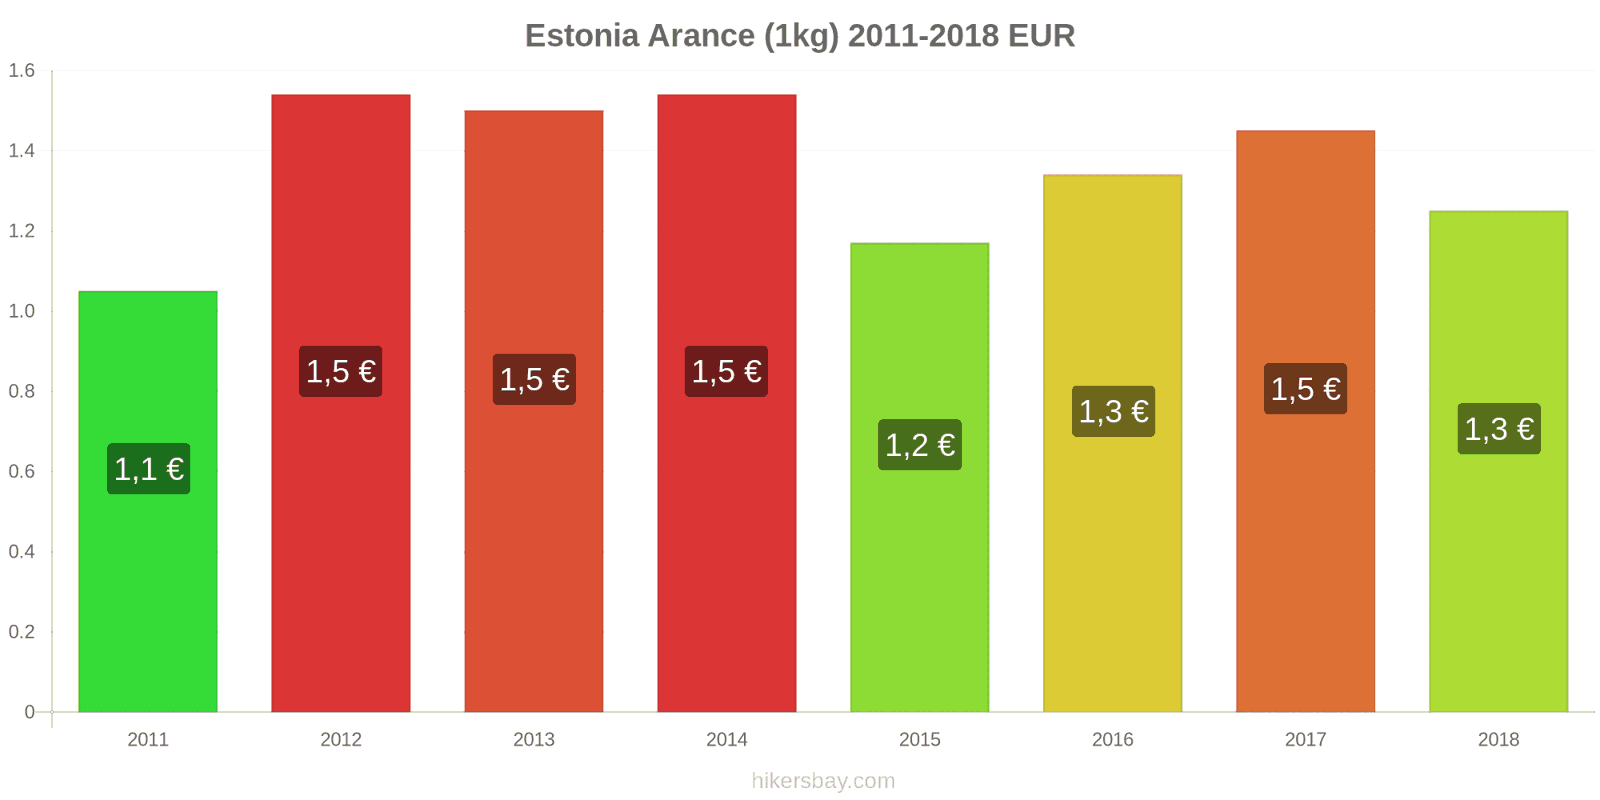 Estonia cambi di prezzo Arance (1kg) hikersbay.com